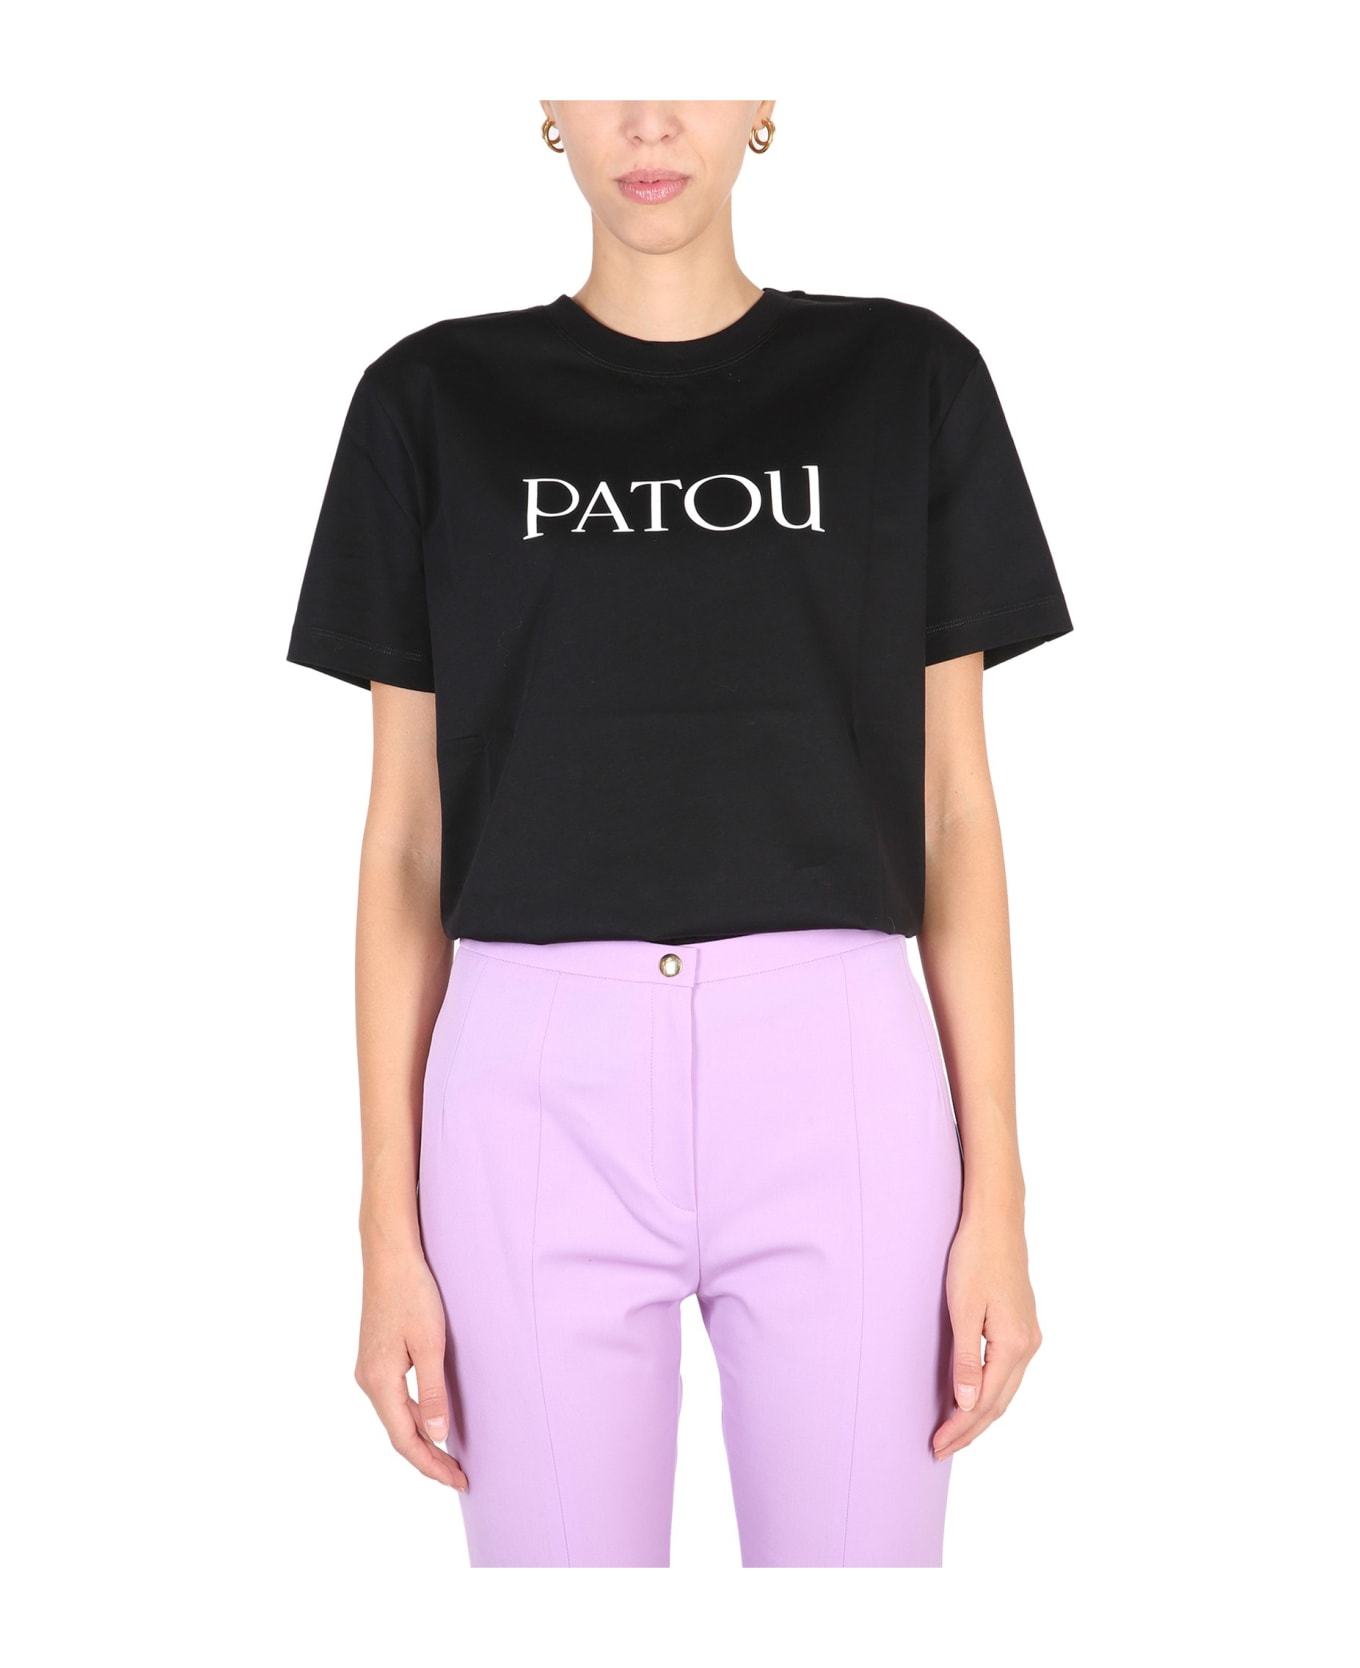 Patou Logo Print T-shirt - BLACK Tシャツ